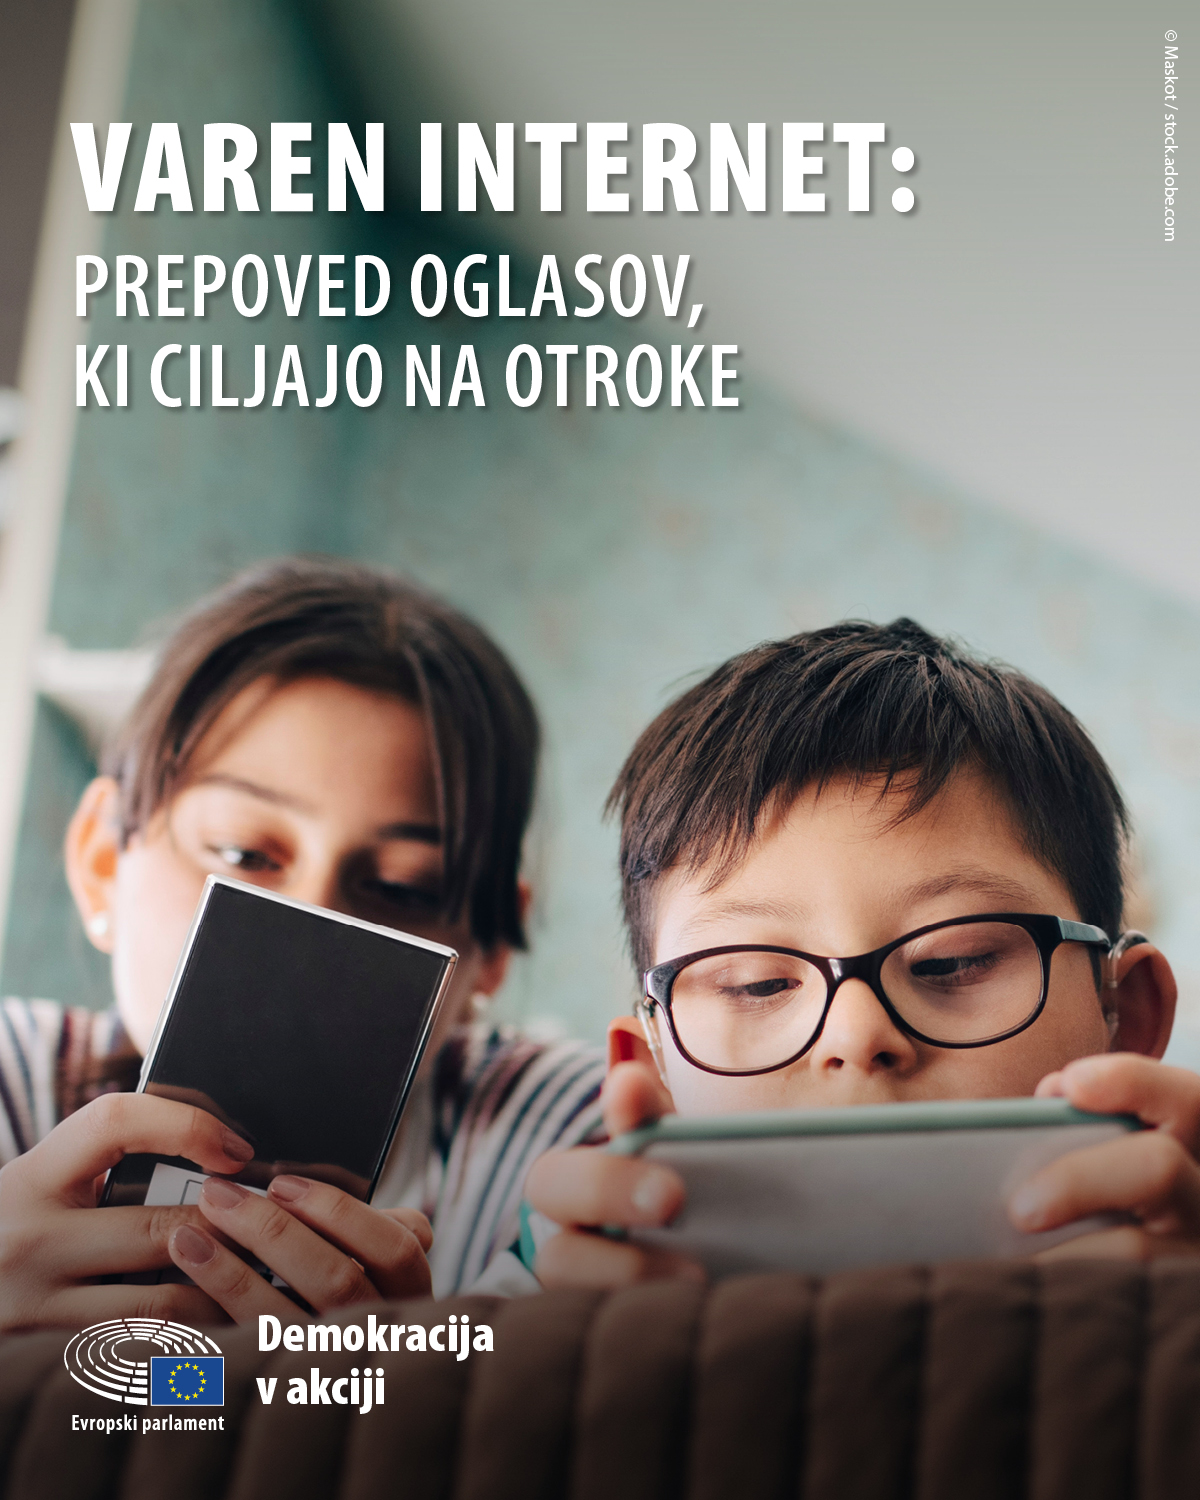 Safe Internet - 4:5